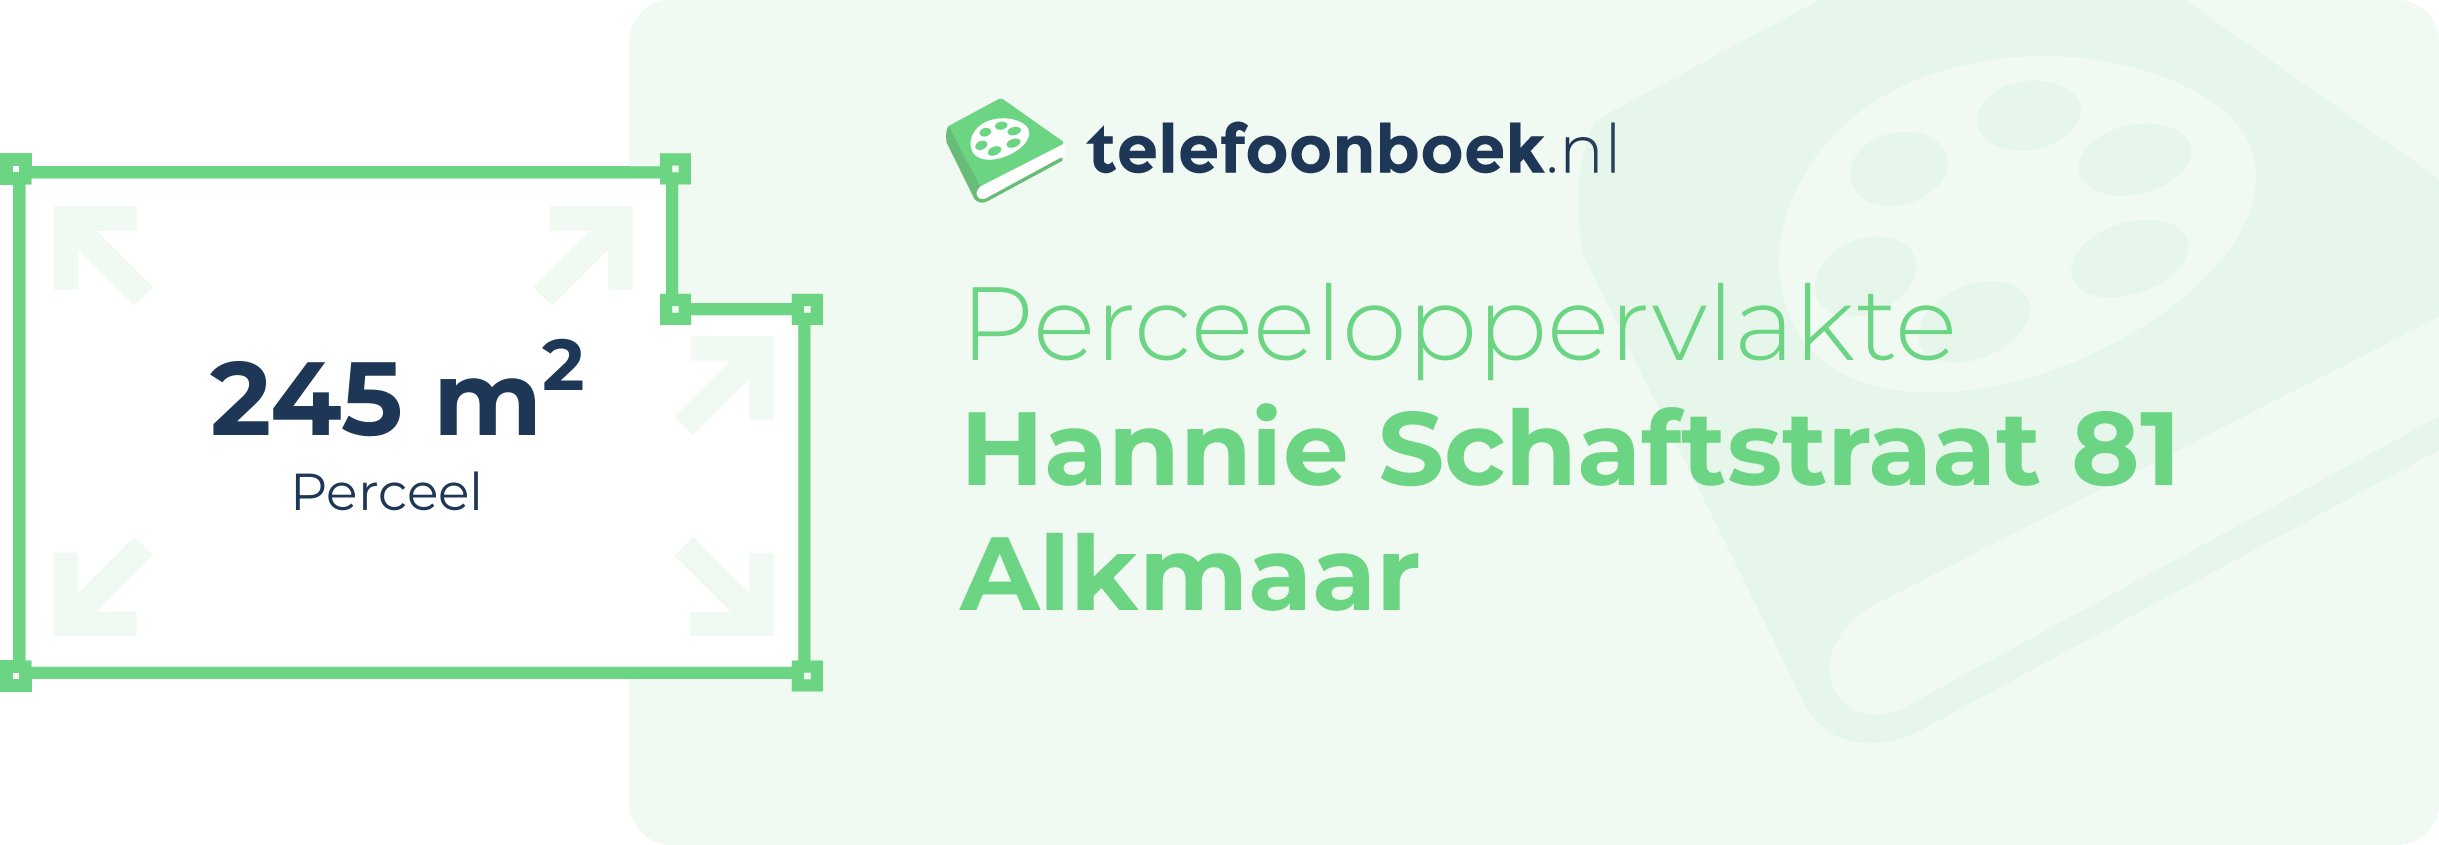 Perceeloppervlakte Hannie Schaftstraat 81 Alkmaar